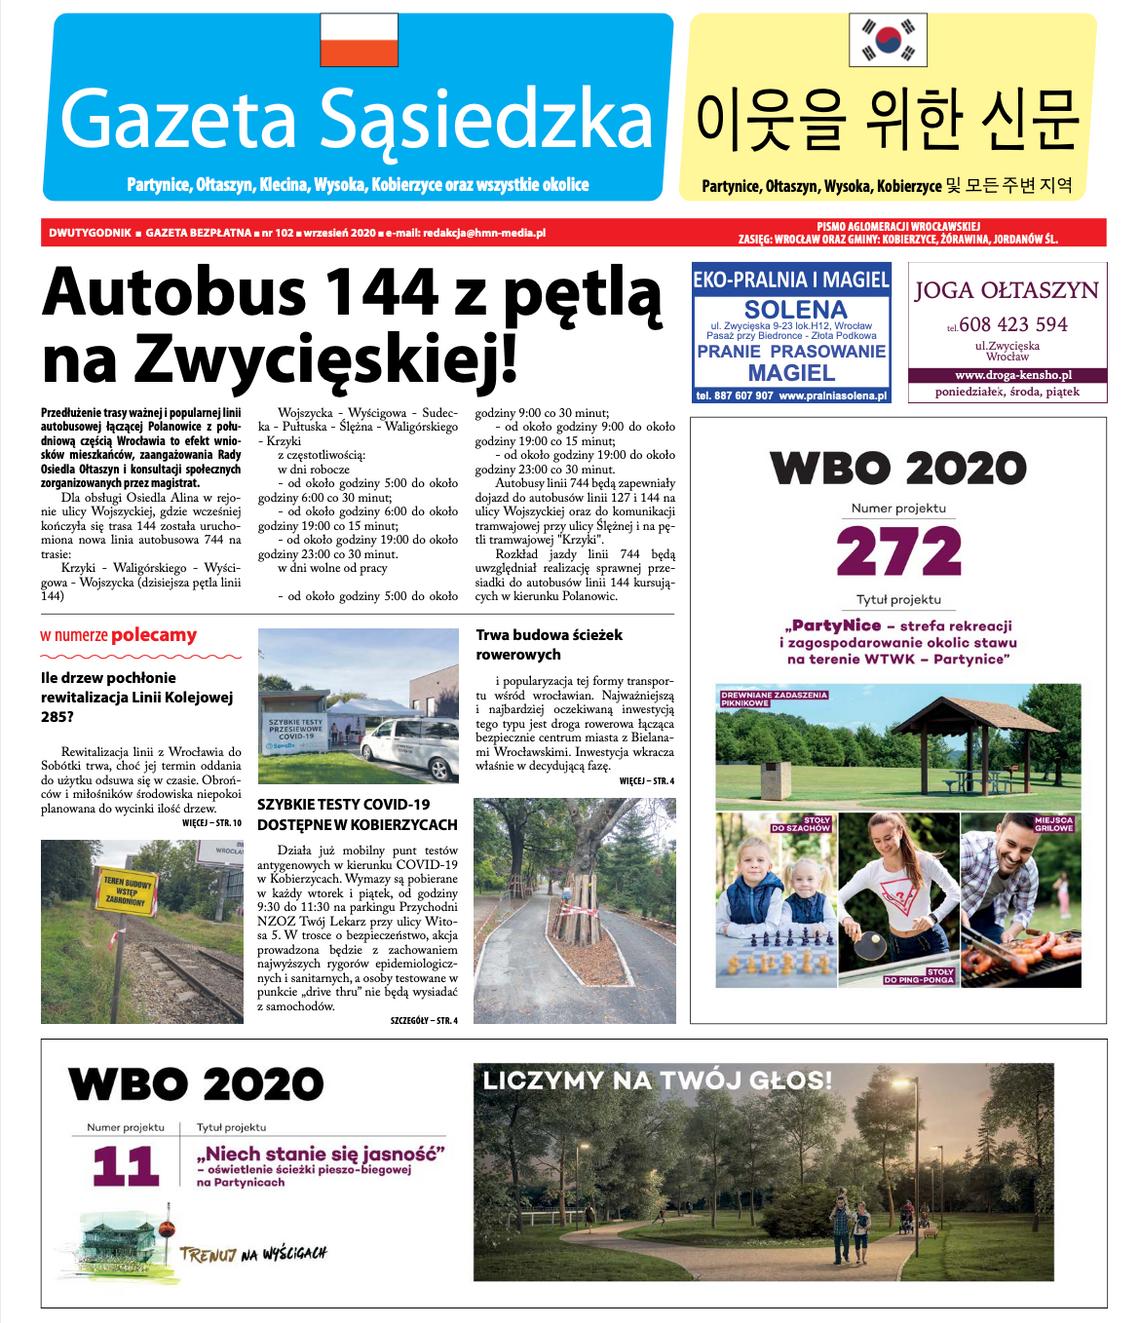 Gazeta Sąsiedzka – wydanie 102 (online)